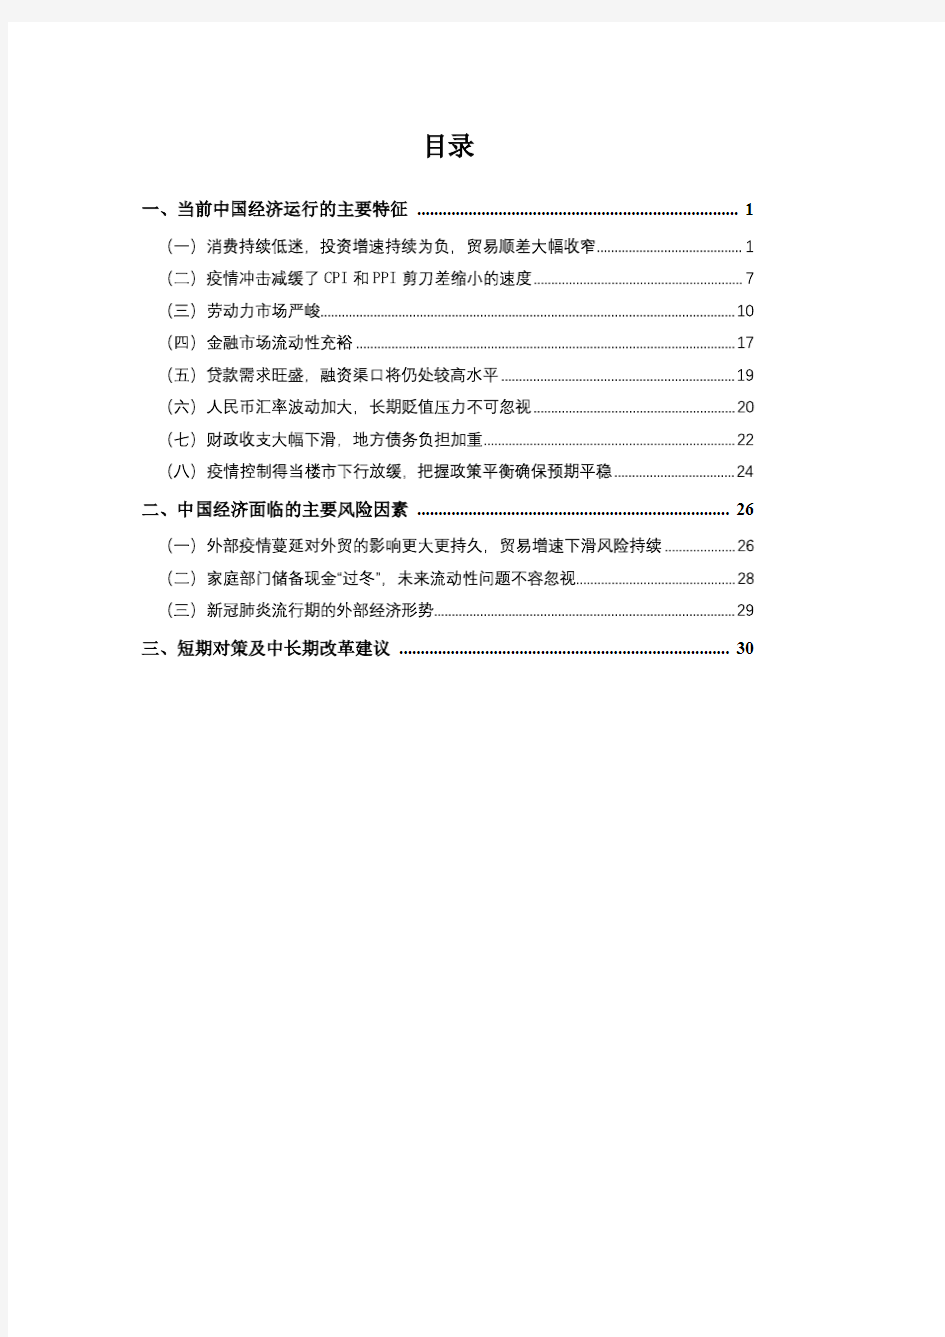 【精品报告】2020Q1中国宏观经济形势分析与预测报告-上海财经大学高等研究院